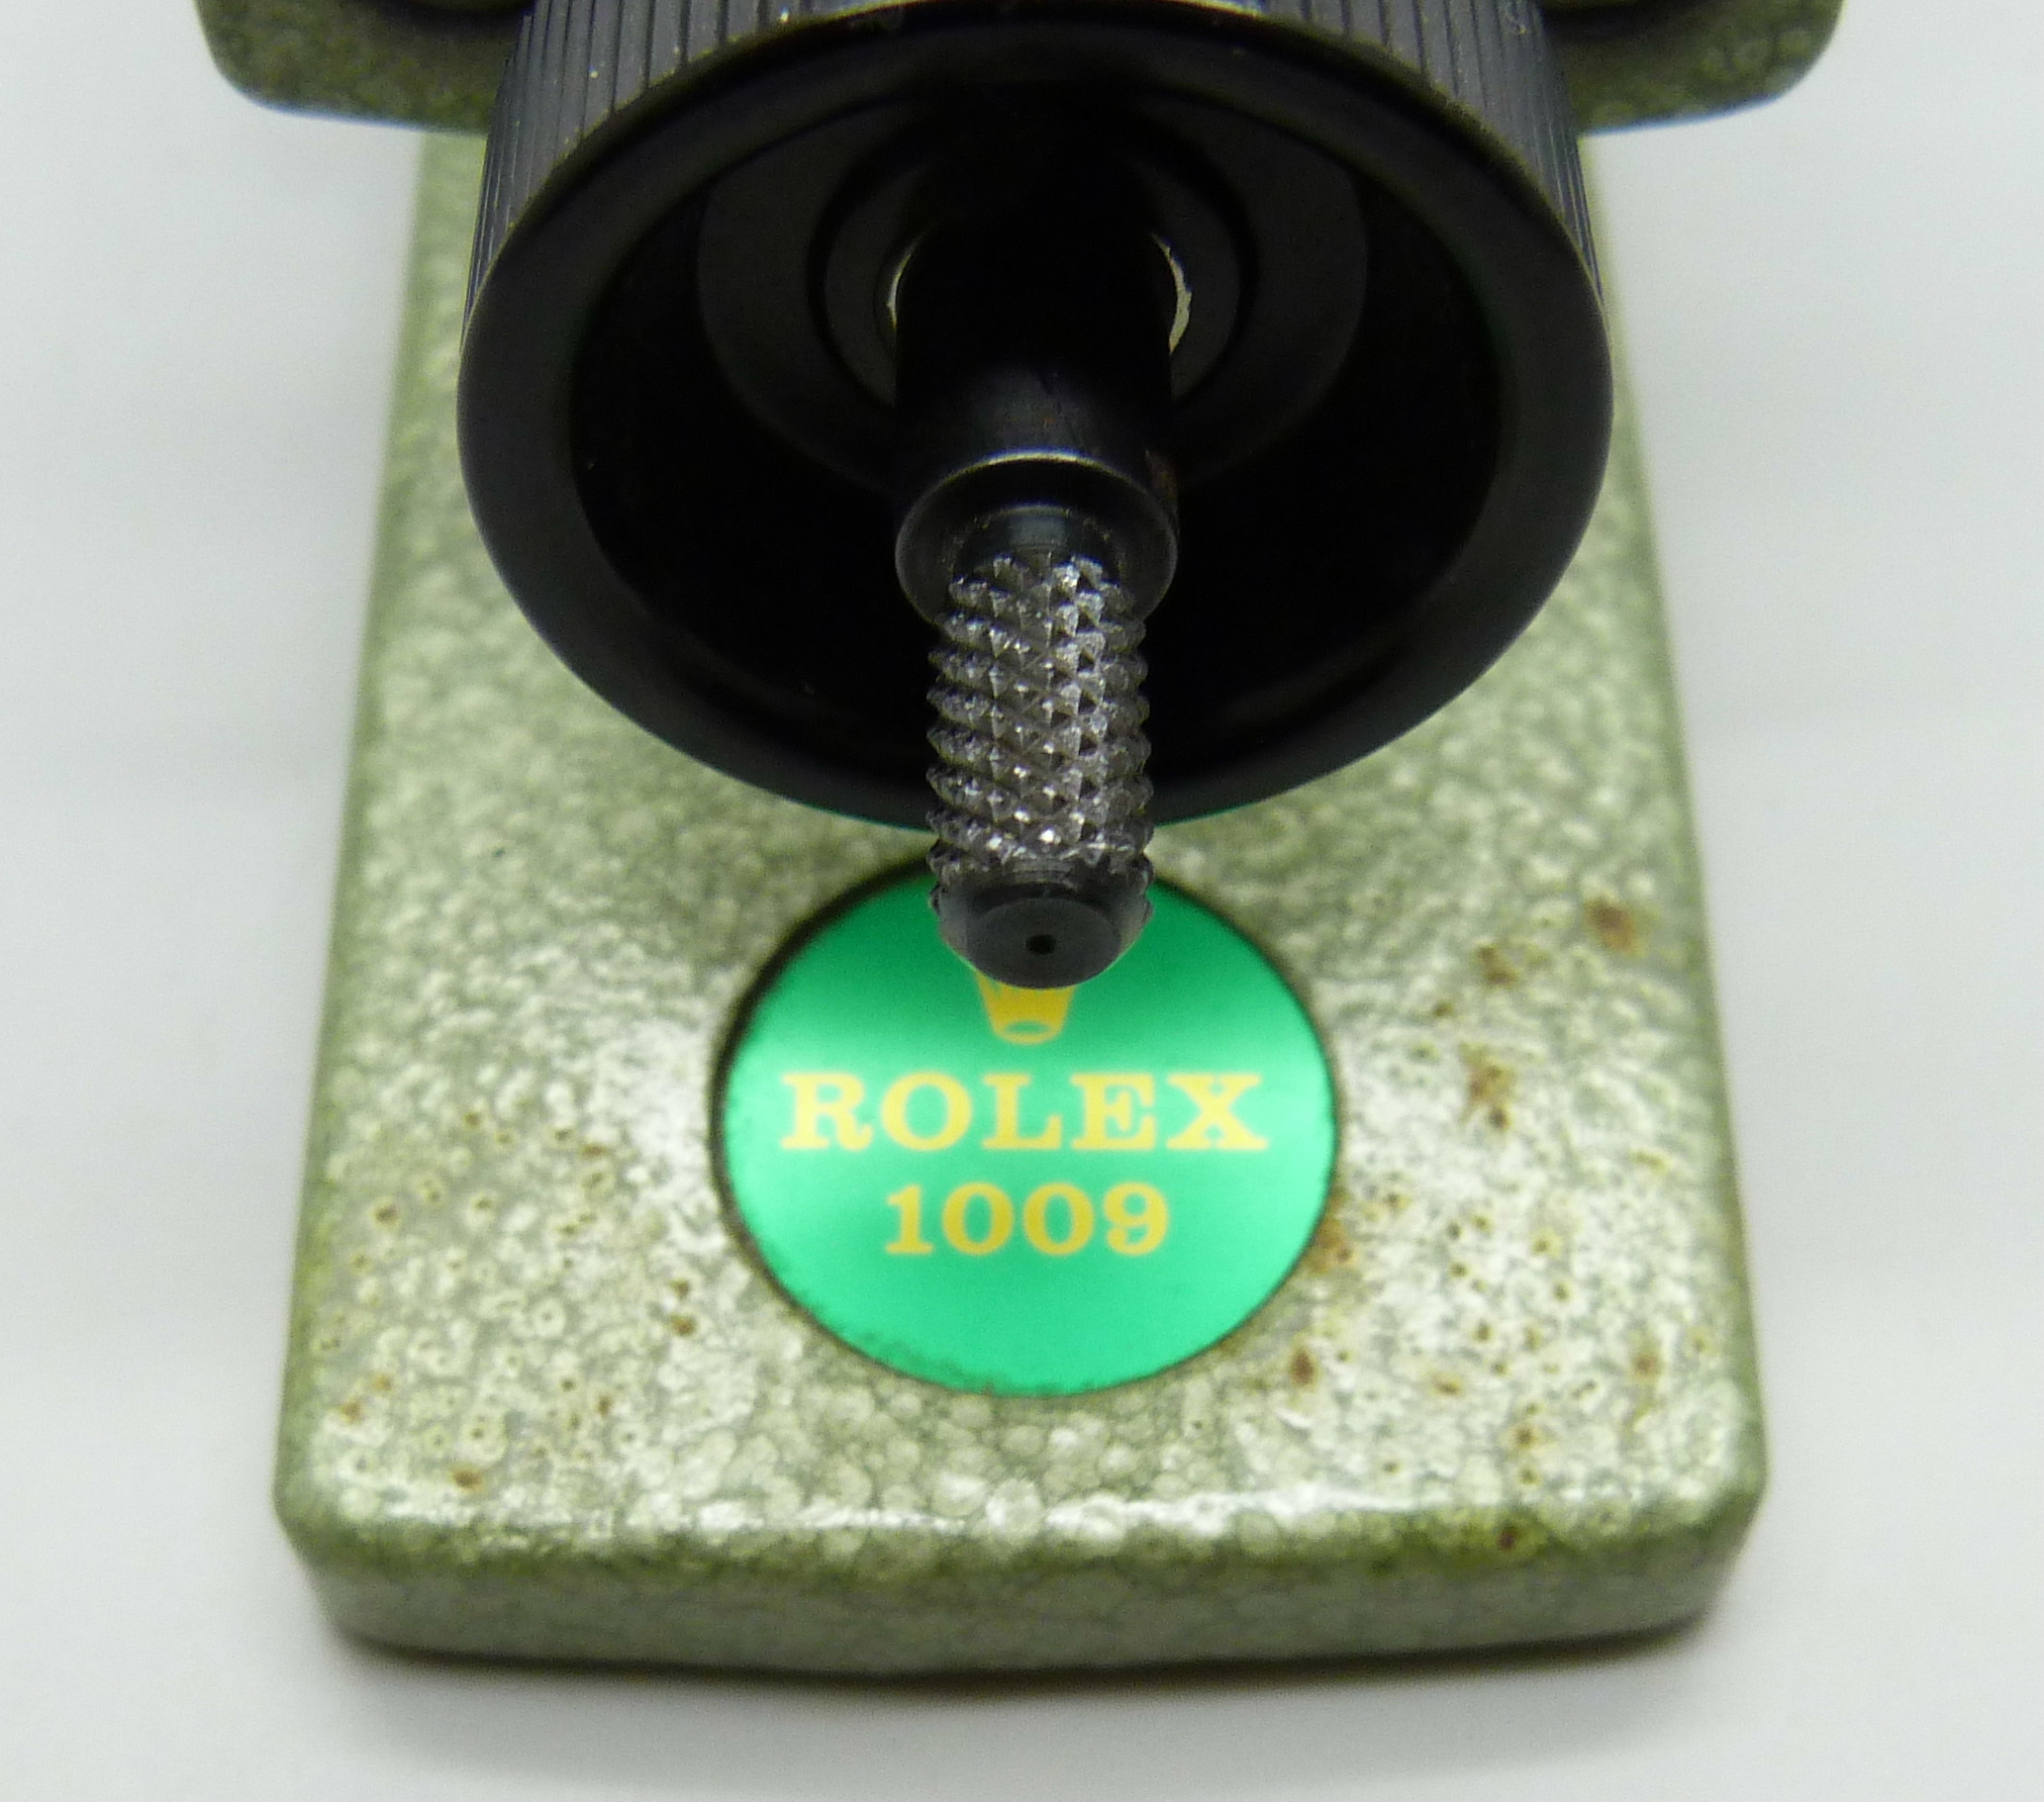 A Rolex 1009 bezel removing tool - Bild 3 aus 4